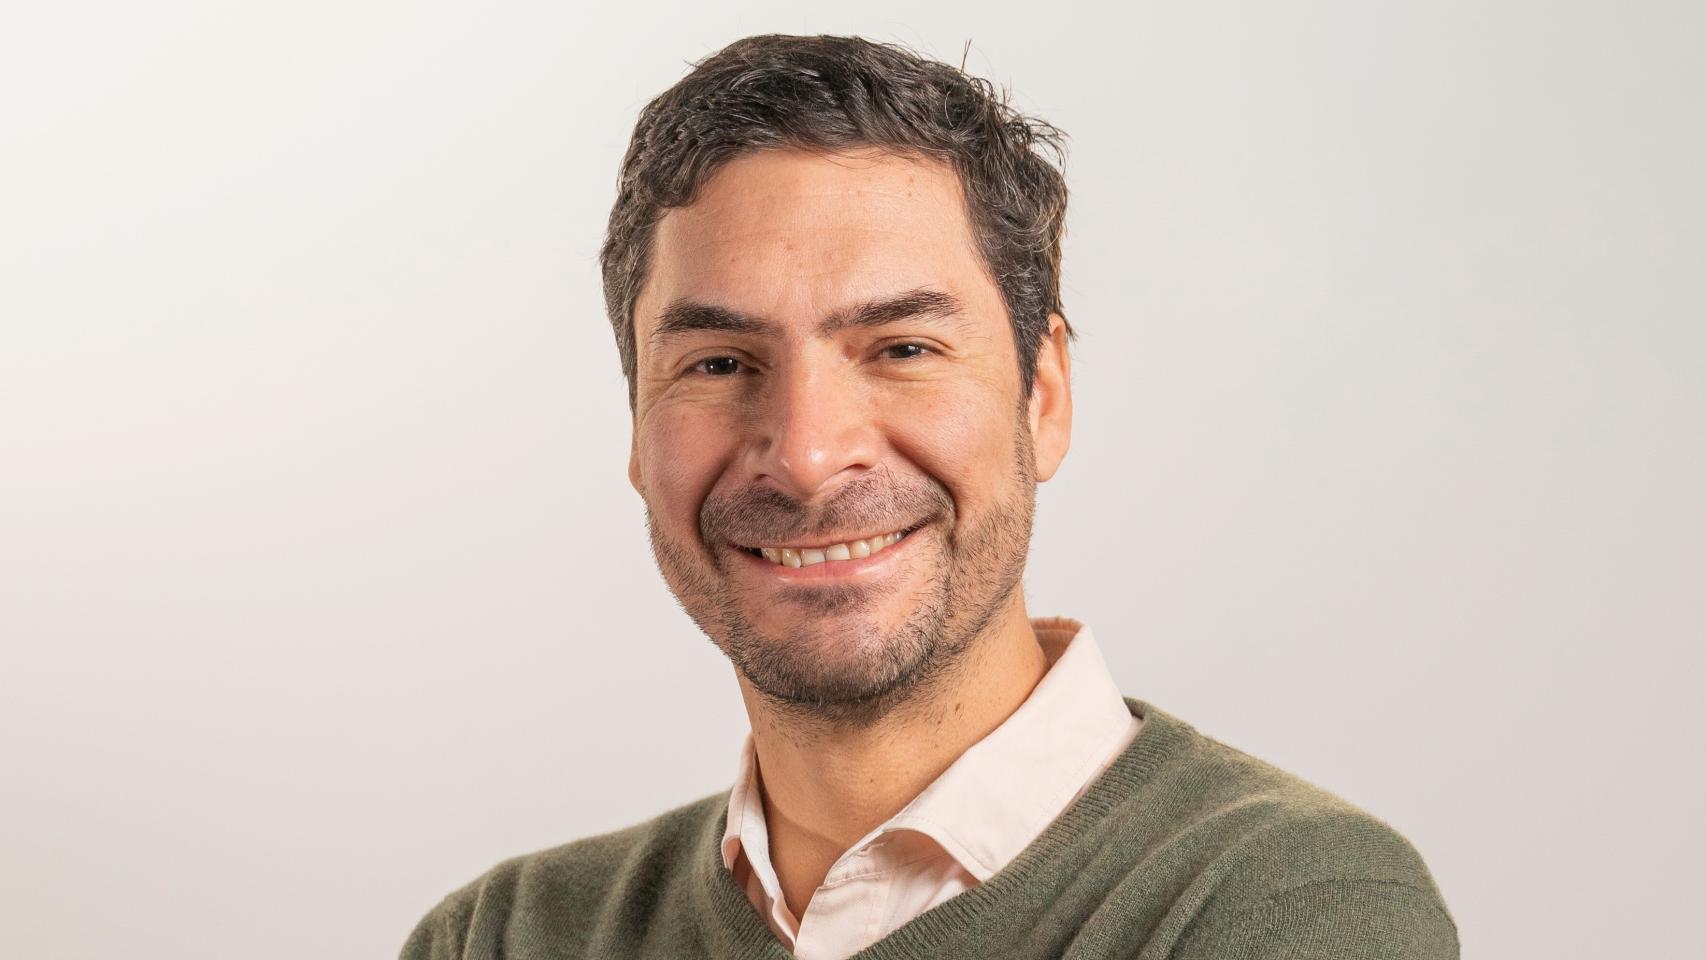 Martín Claure es el CEO de la startup Aprende.